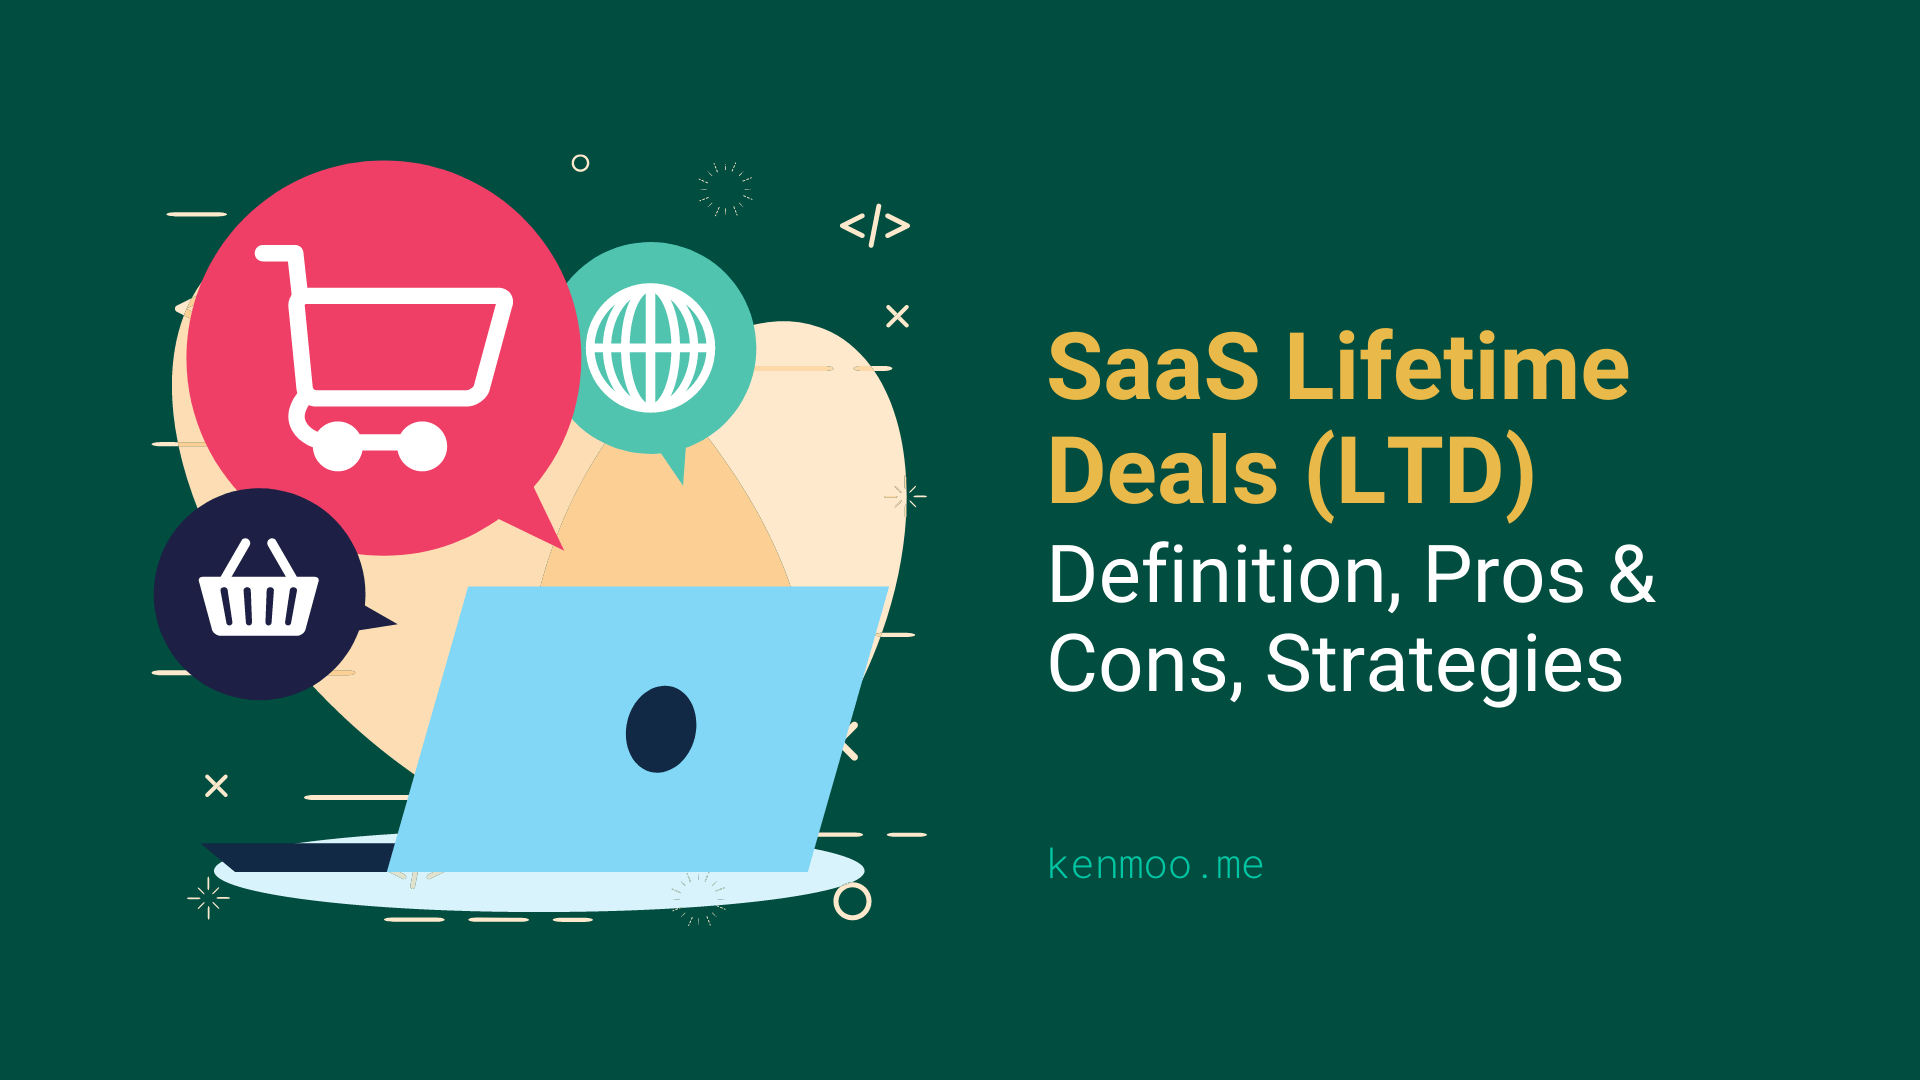 SaaS Lifetime Deals (LTD): Definition, Pros & Cons, Strategies